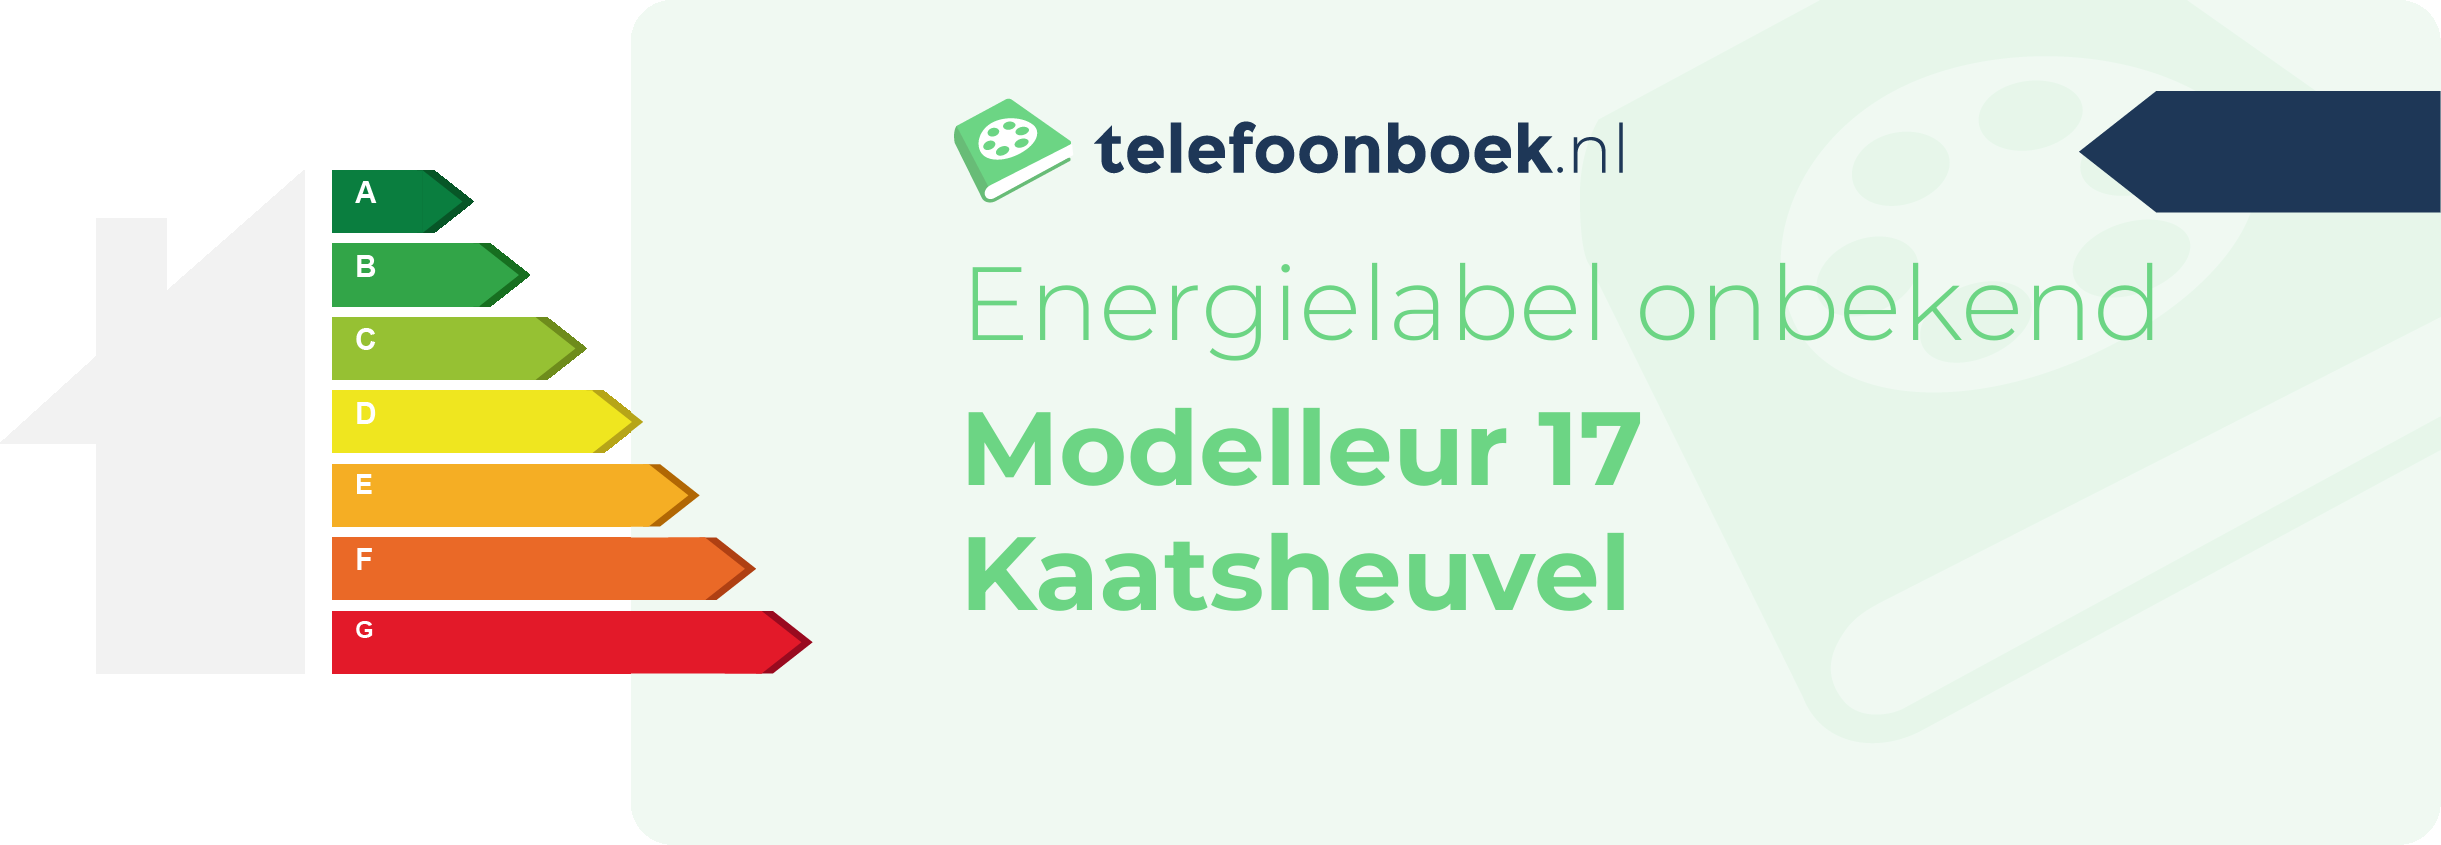 Energielabel Modelleur 17 Kaatsheuvel